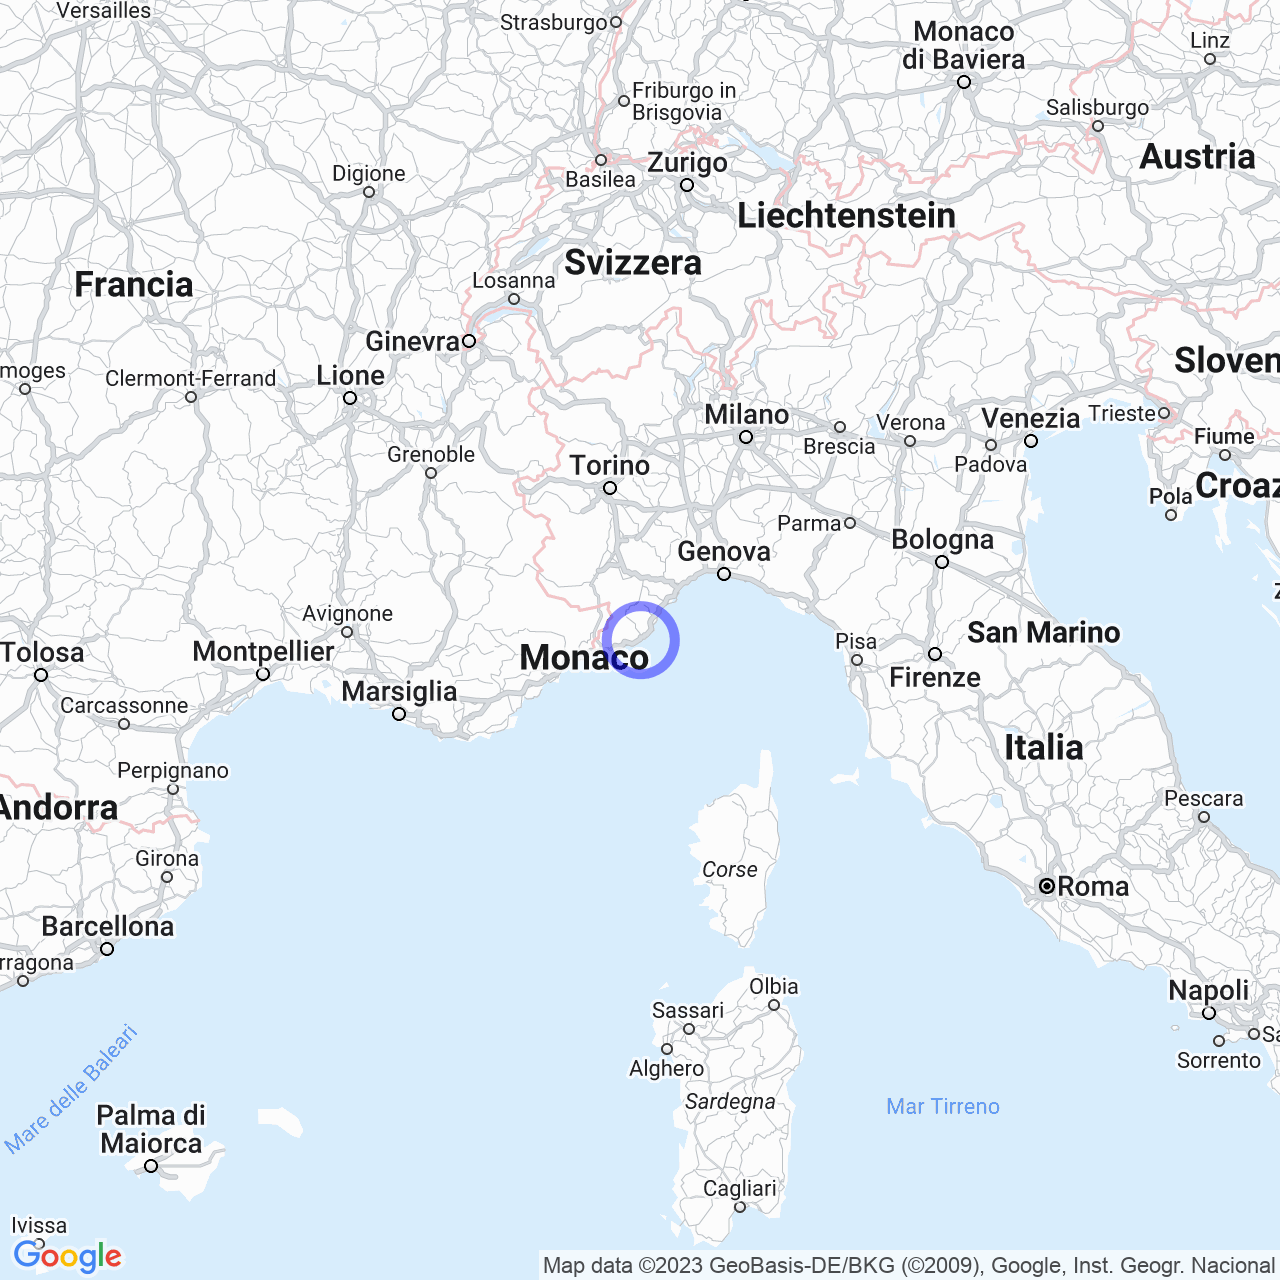 Imperia: the city born from the fusion of Oneglia and Porto Maurizio.